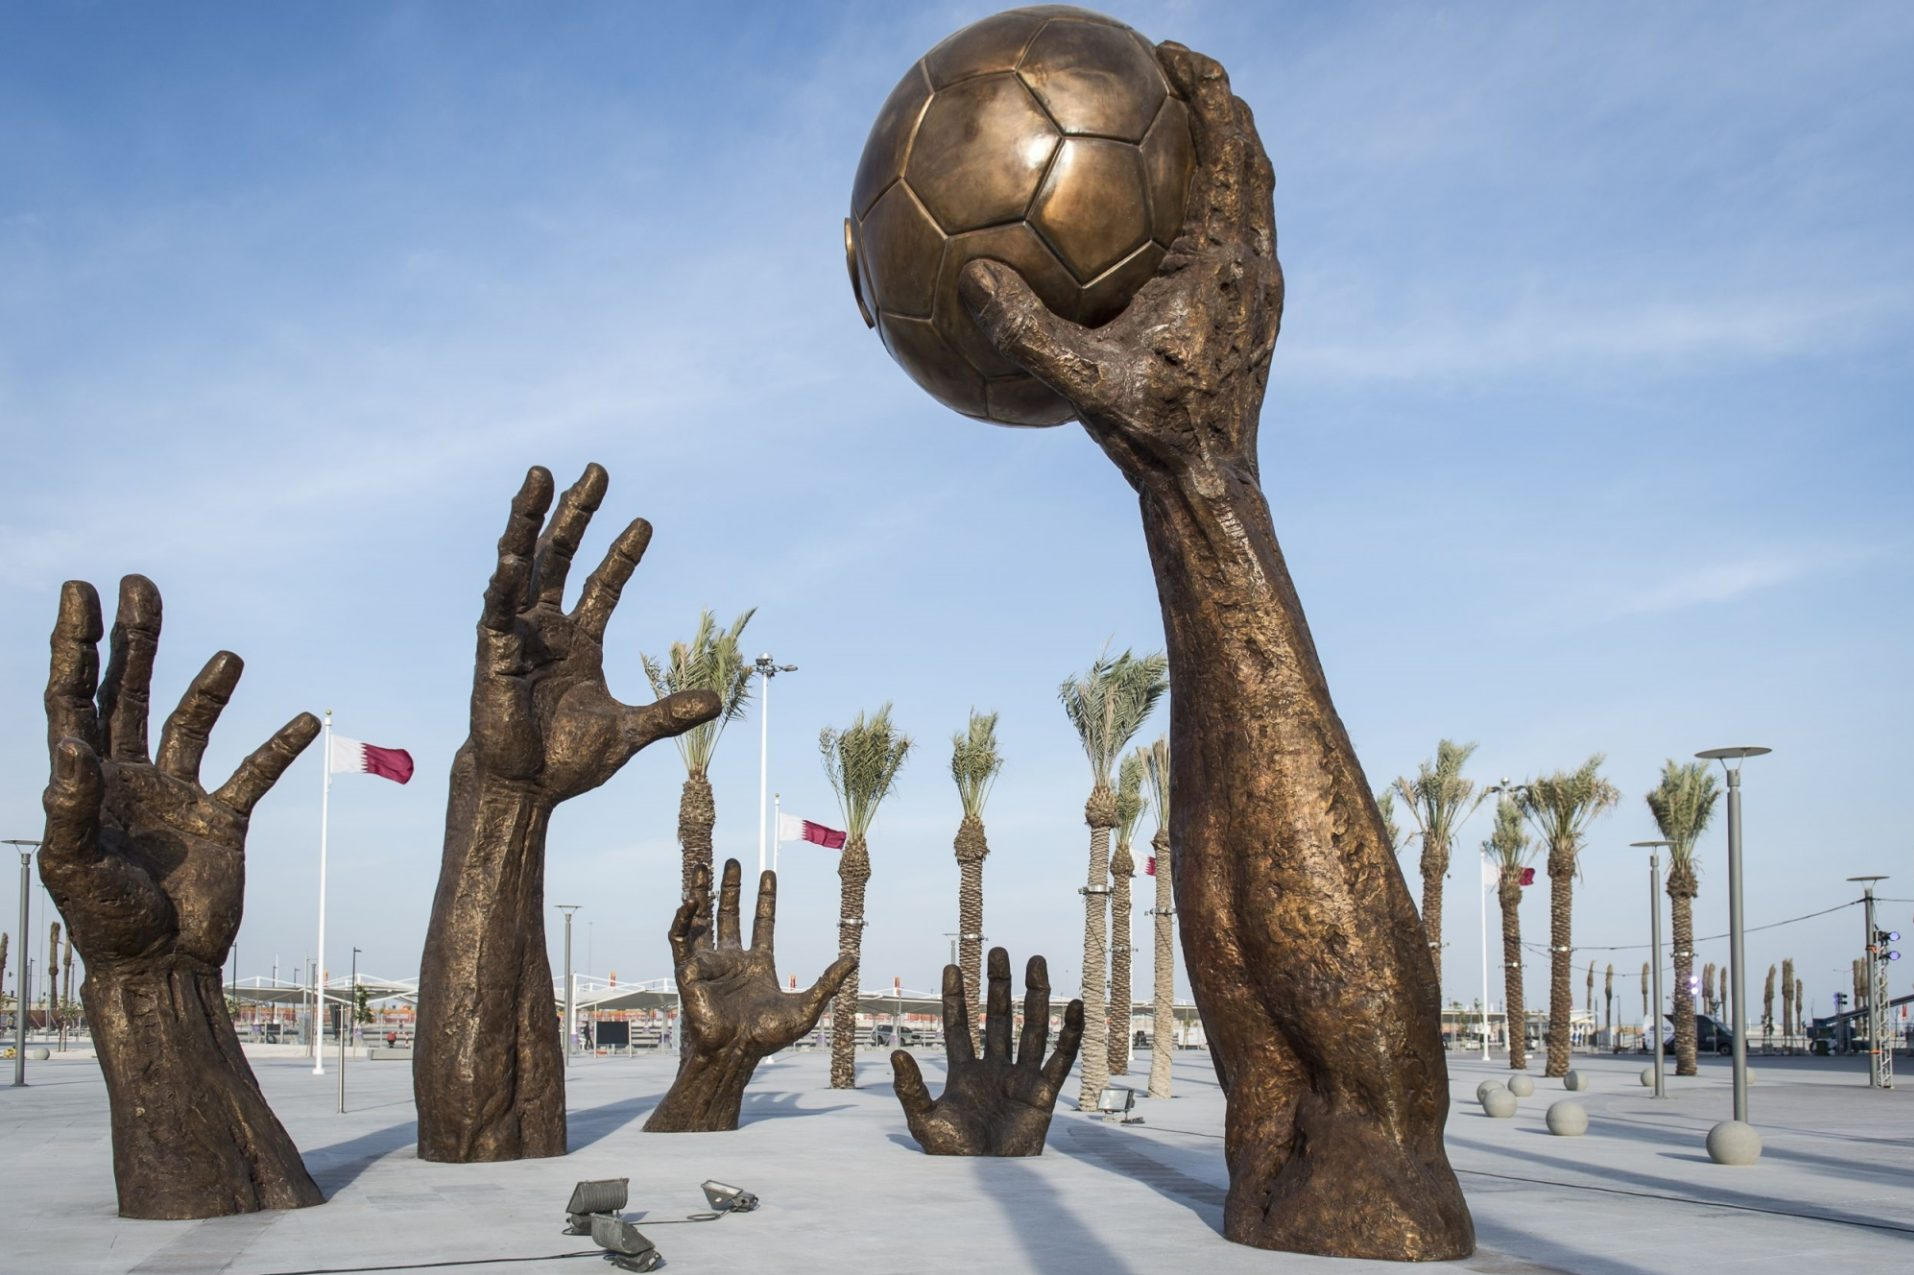 Kuiswa kwezvidhori zvikuru makumi mana muQatar/Football World Cup uye kukwezva kaviri